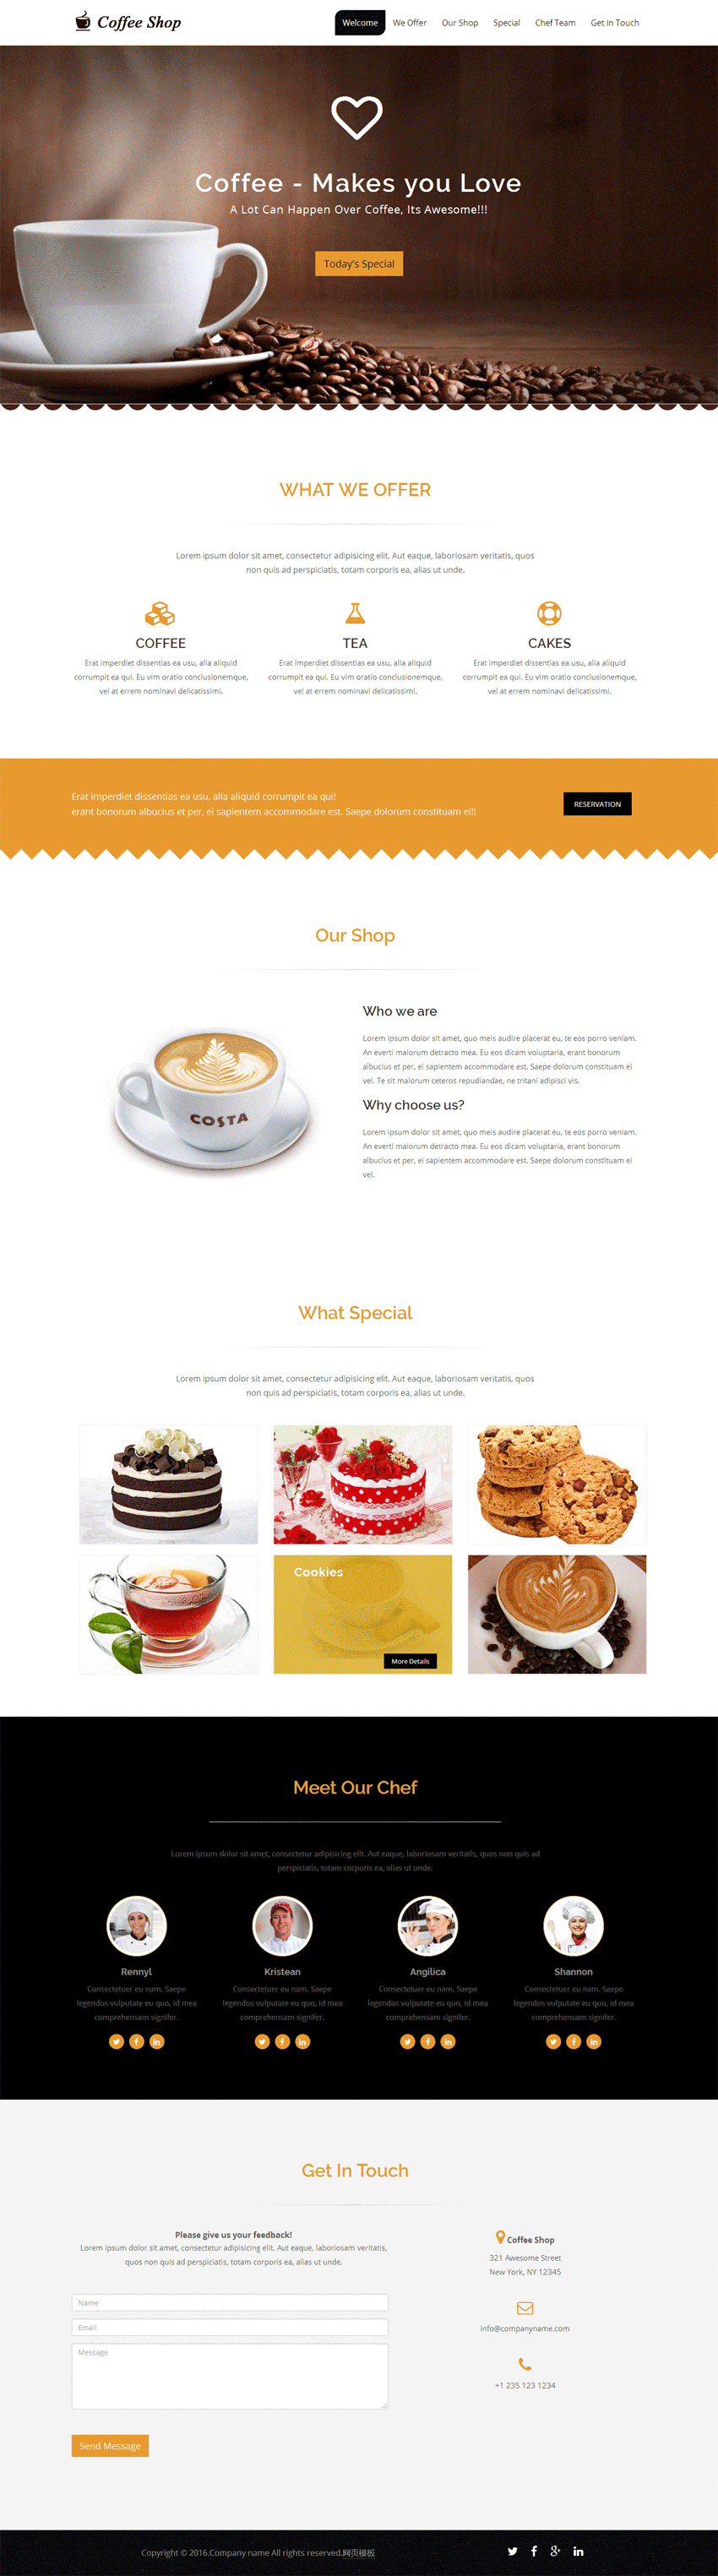 简洁咖啡店铺单页展示模板html下载